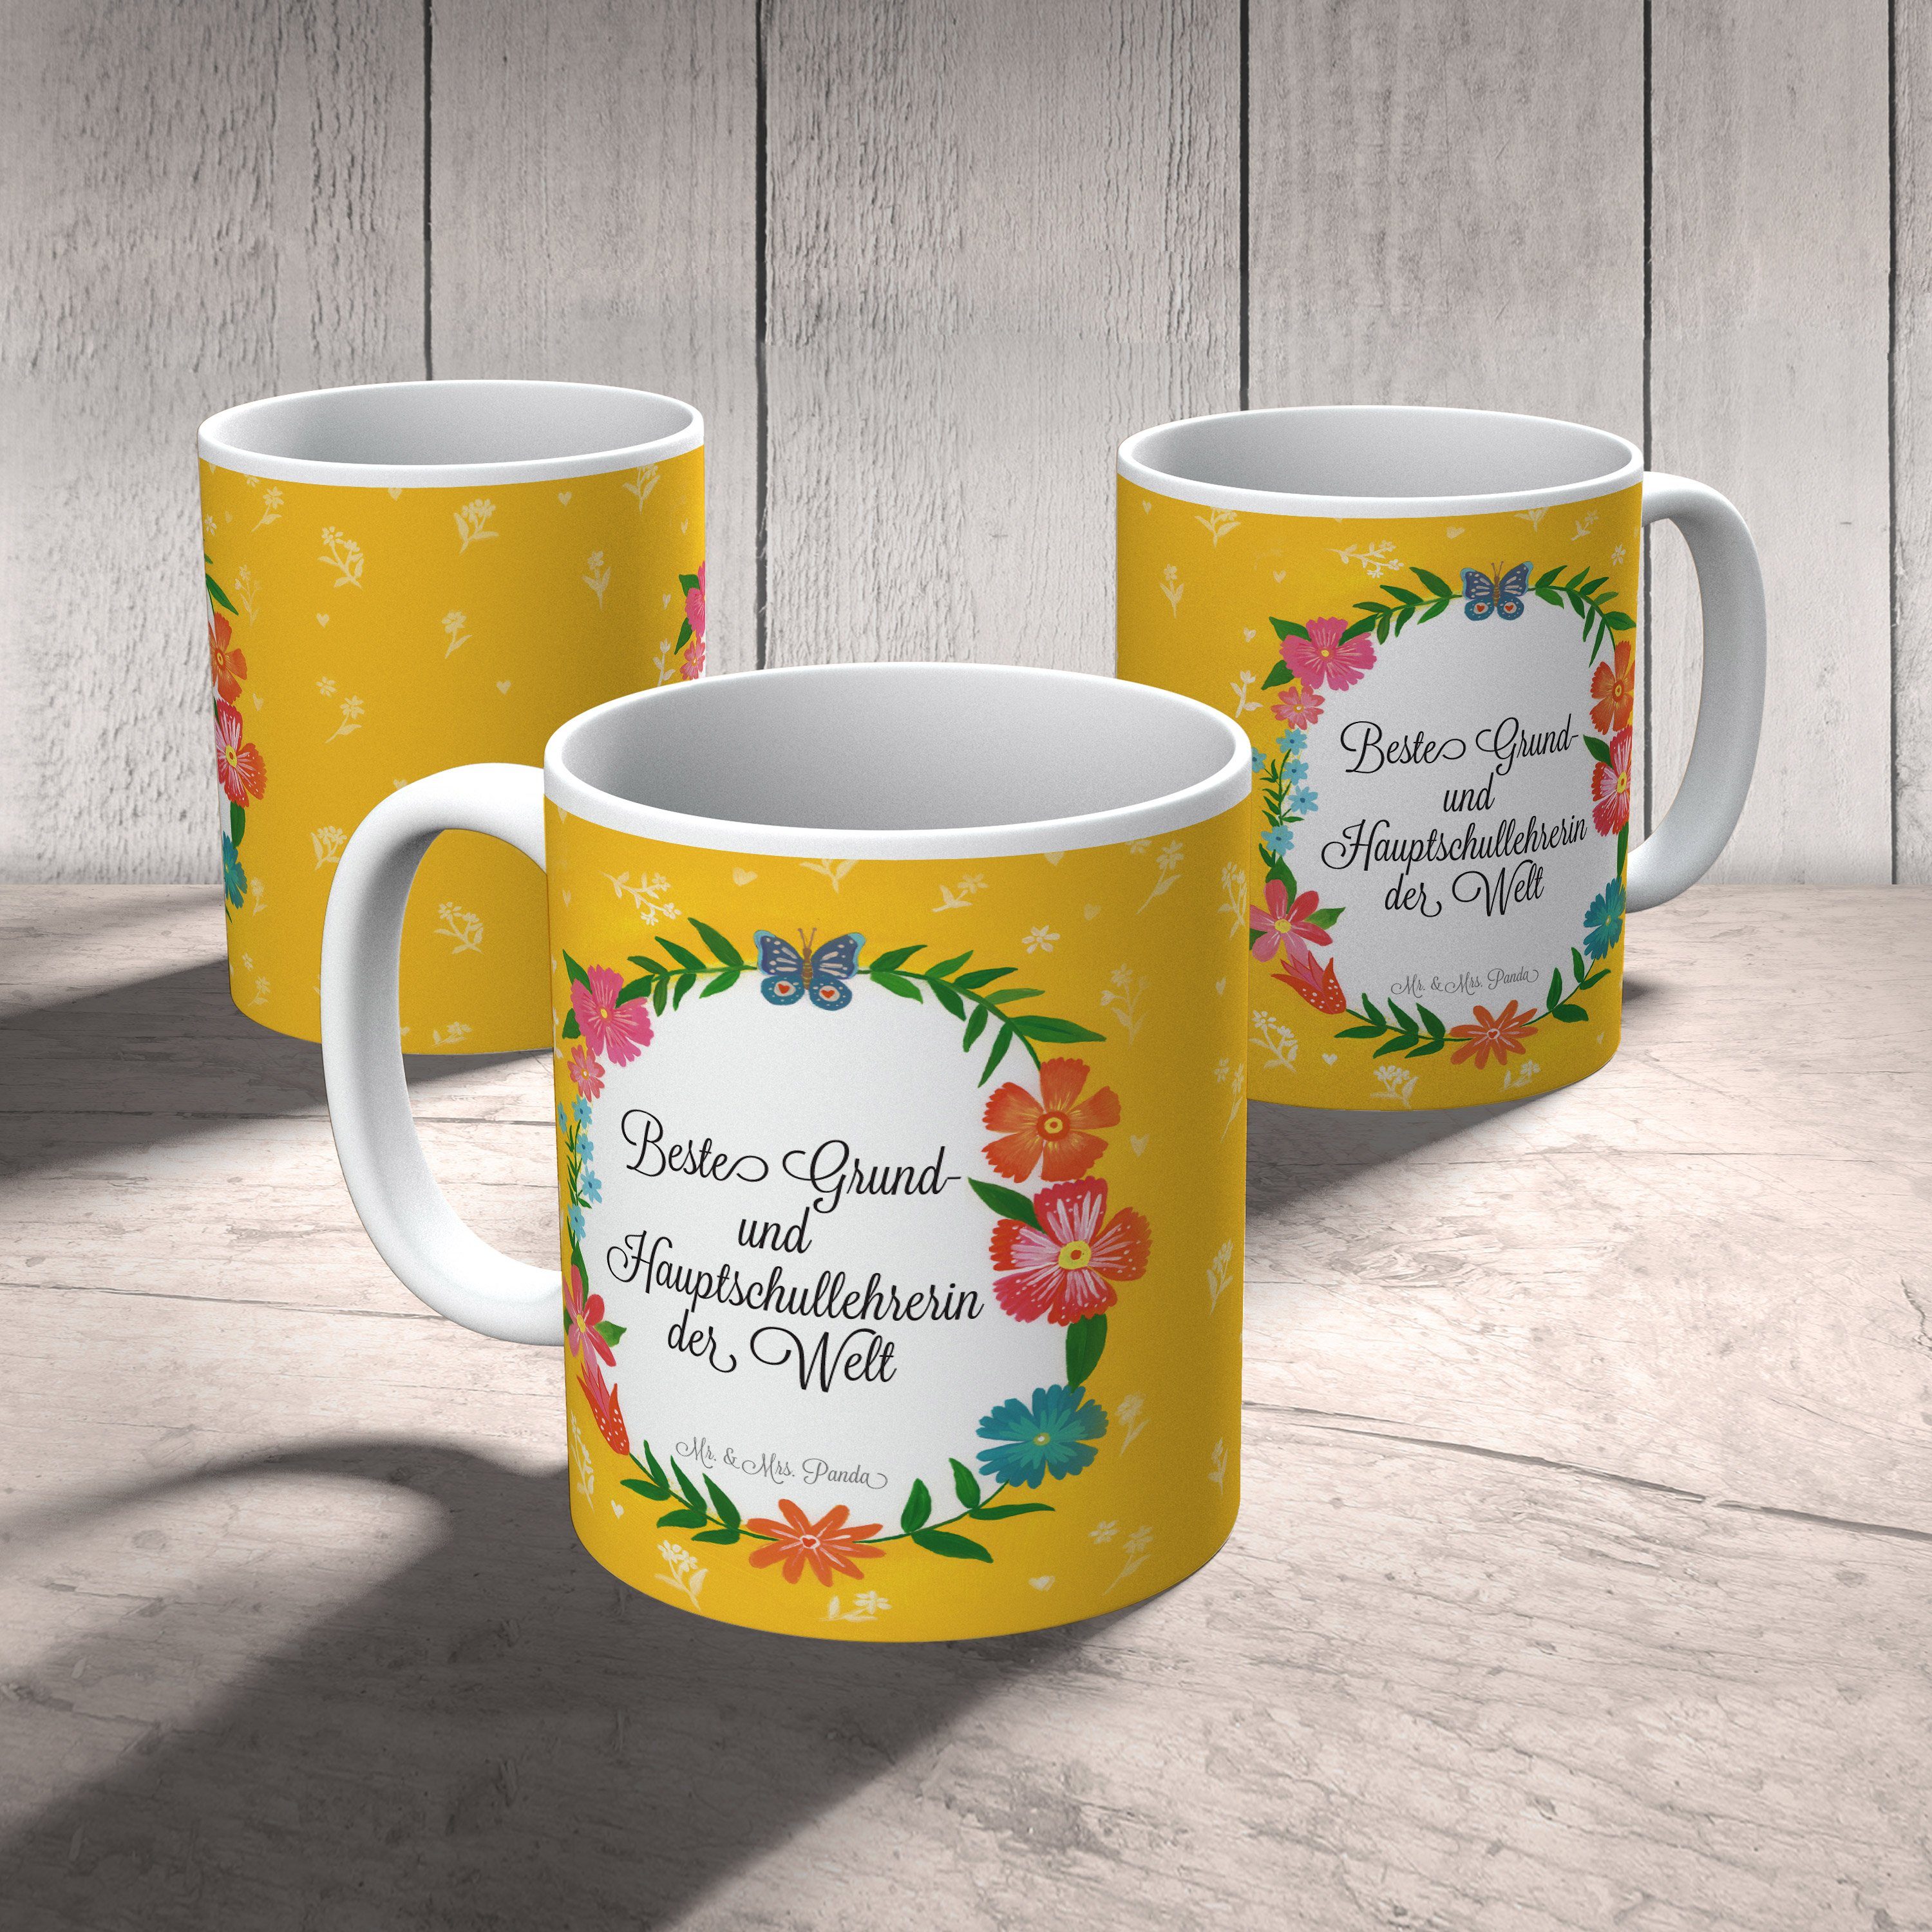 Kaffeebecher, & Keramik - Mrs. Panda Hauptschullehrerin Abschluss, und Mr. Au, Grund- Geschenk, Tasse